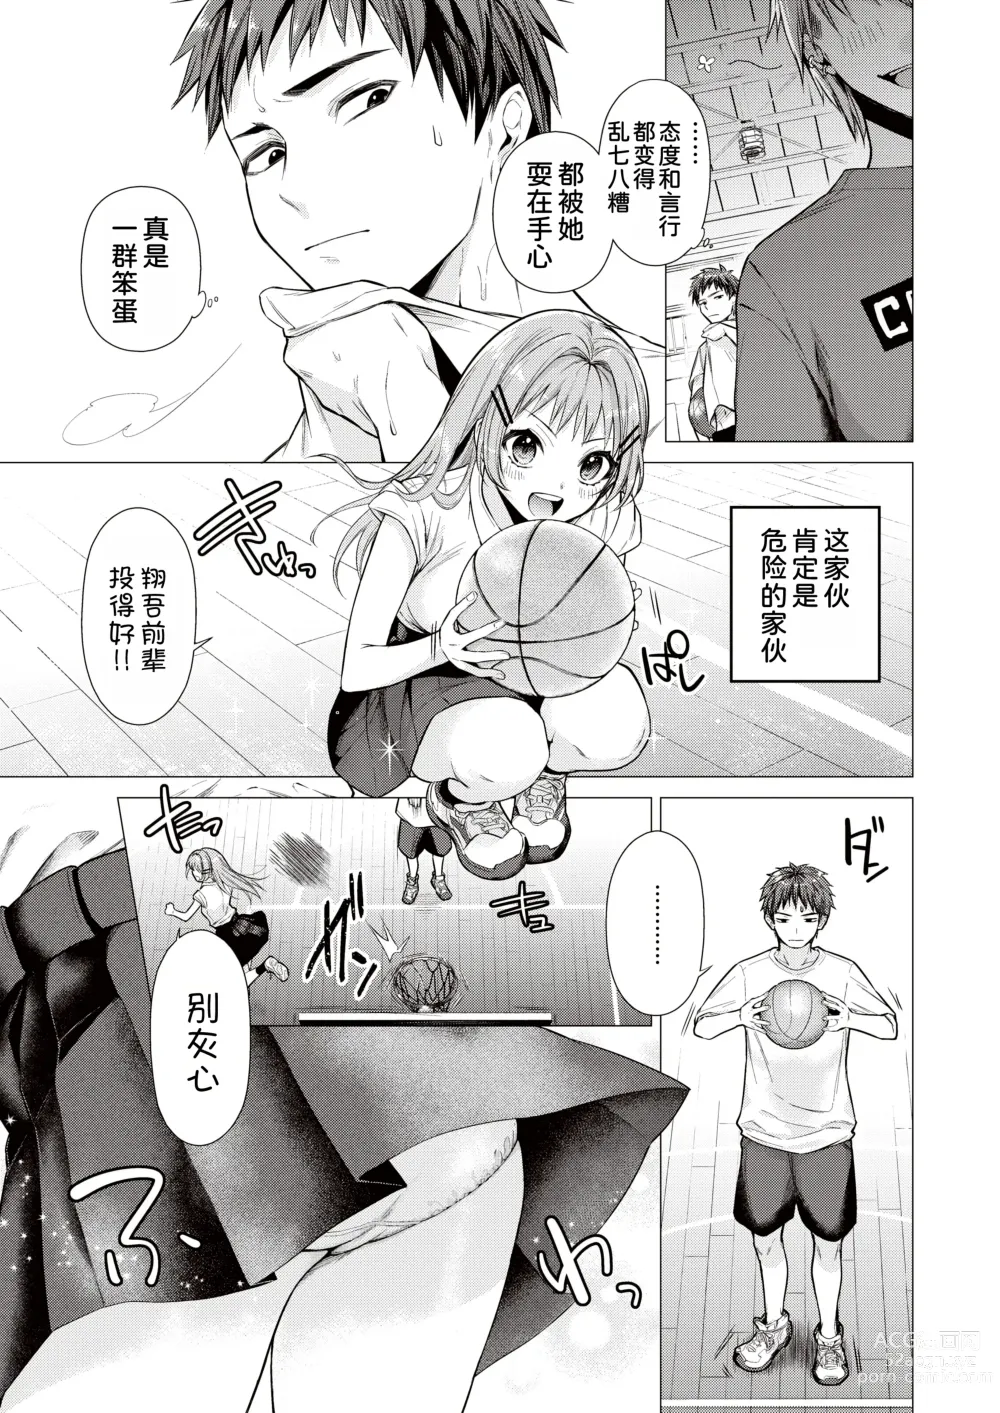 Page 4 of manga Tanemura Kurumi wa Kyou mo Kawaii